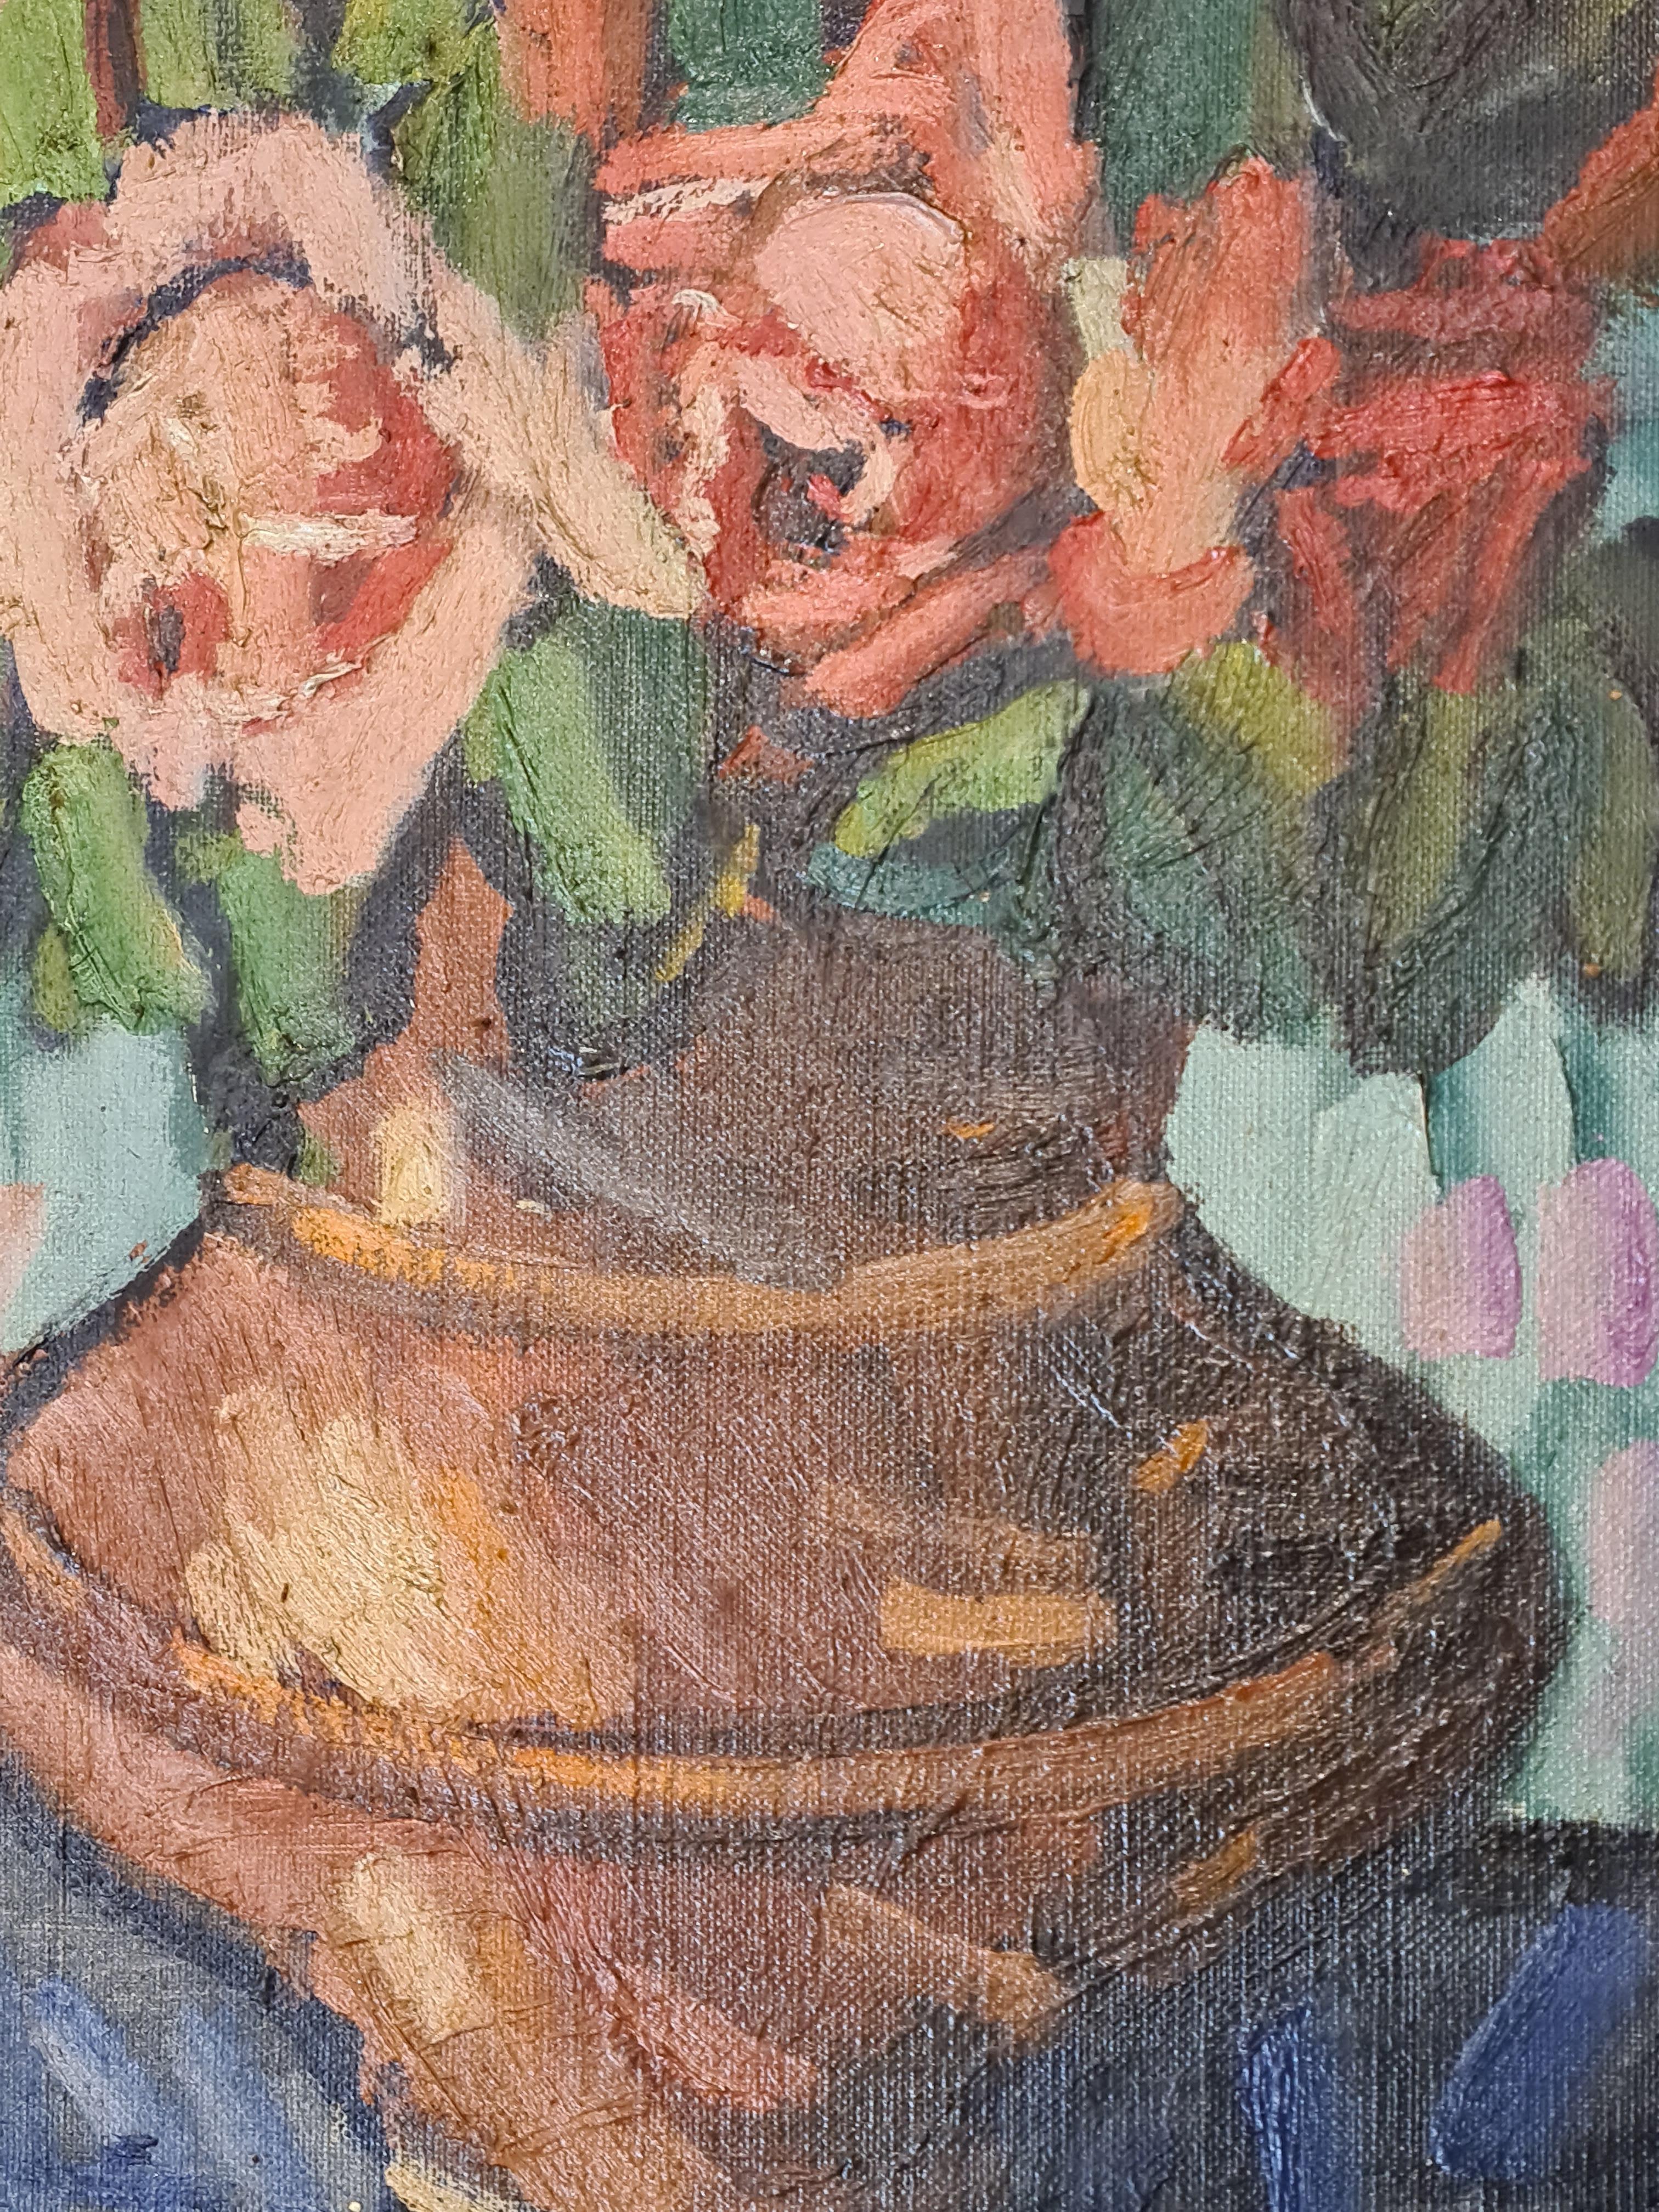 Nature morte française du milieu du siècle représentant des roses dans un vase, huile sur toile de l'artiste marseillais Henri Reboa. L'œuvre est signée en bas à droite et est présentée dans un cadre doré.

Ce tableau de roses dans un vase sur un